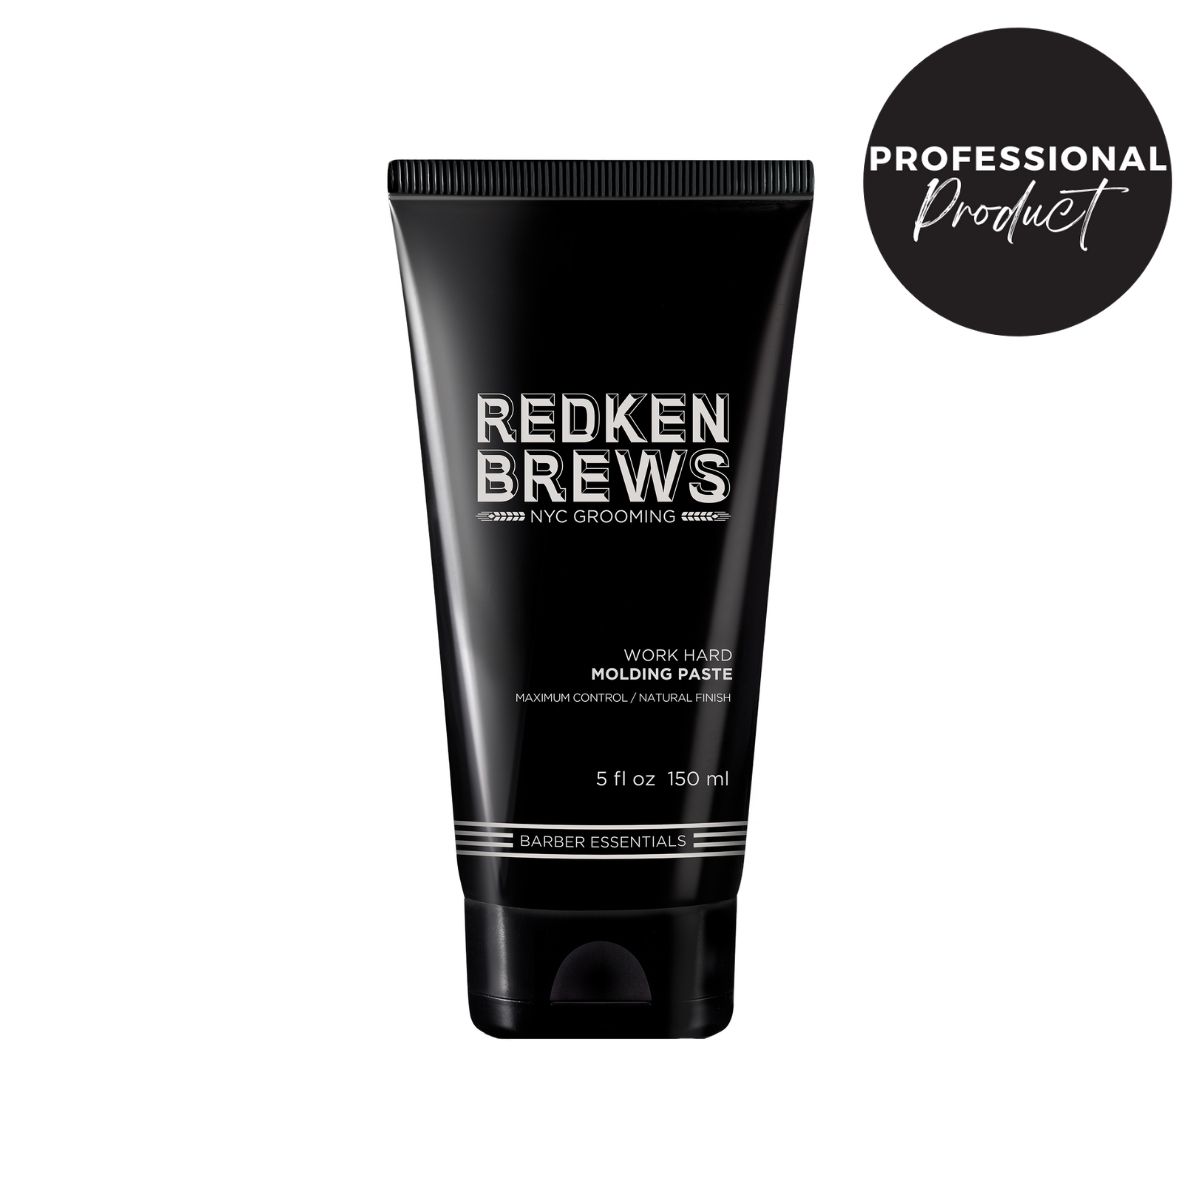 Redken - Redken | Brews Work Hard Molding Pomada 150ml | Pasta texturizada, fuerte y moldeable que trabaja el cabello con facilidad. Ideal para estilos con forma y control extremo a la vez que flexible enfocada al público masculino.